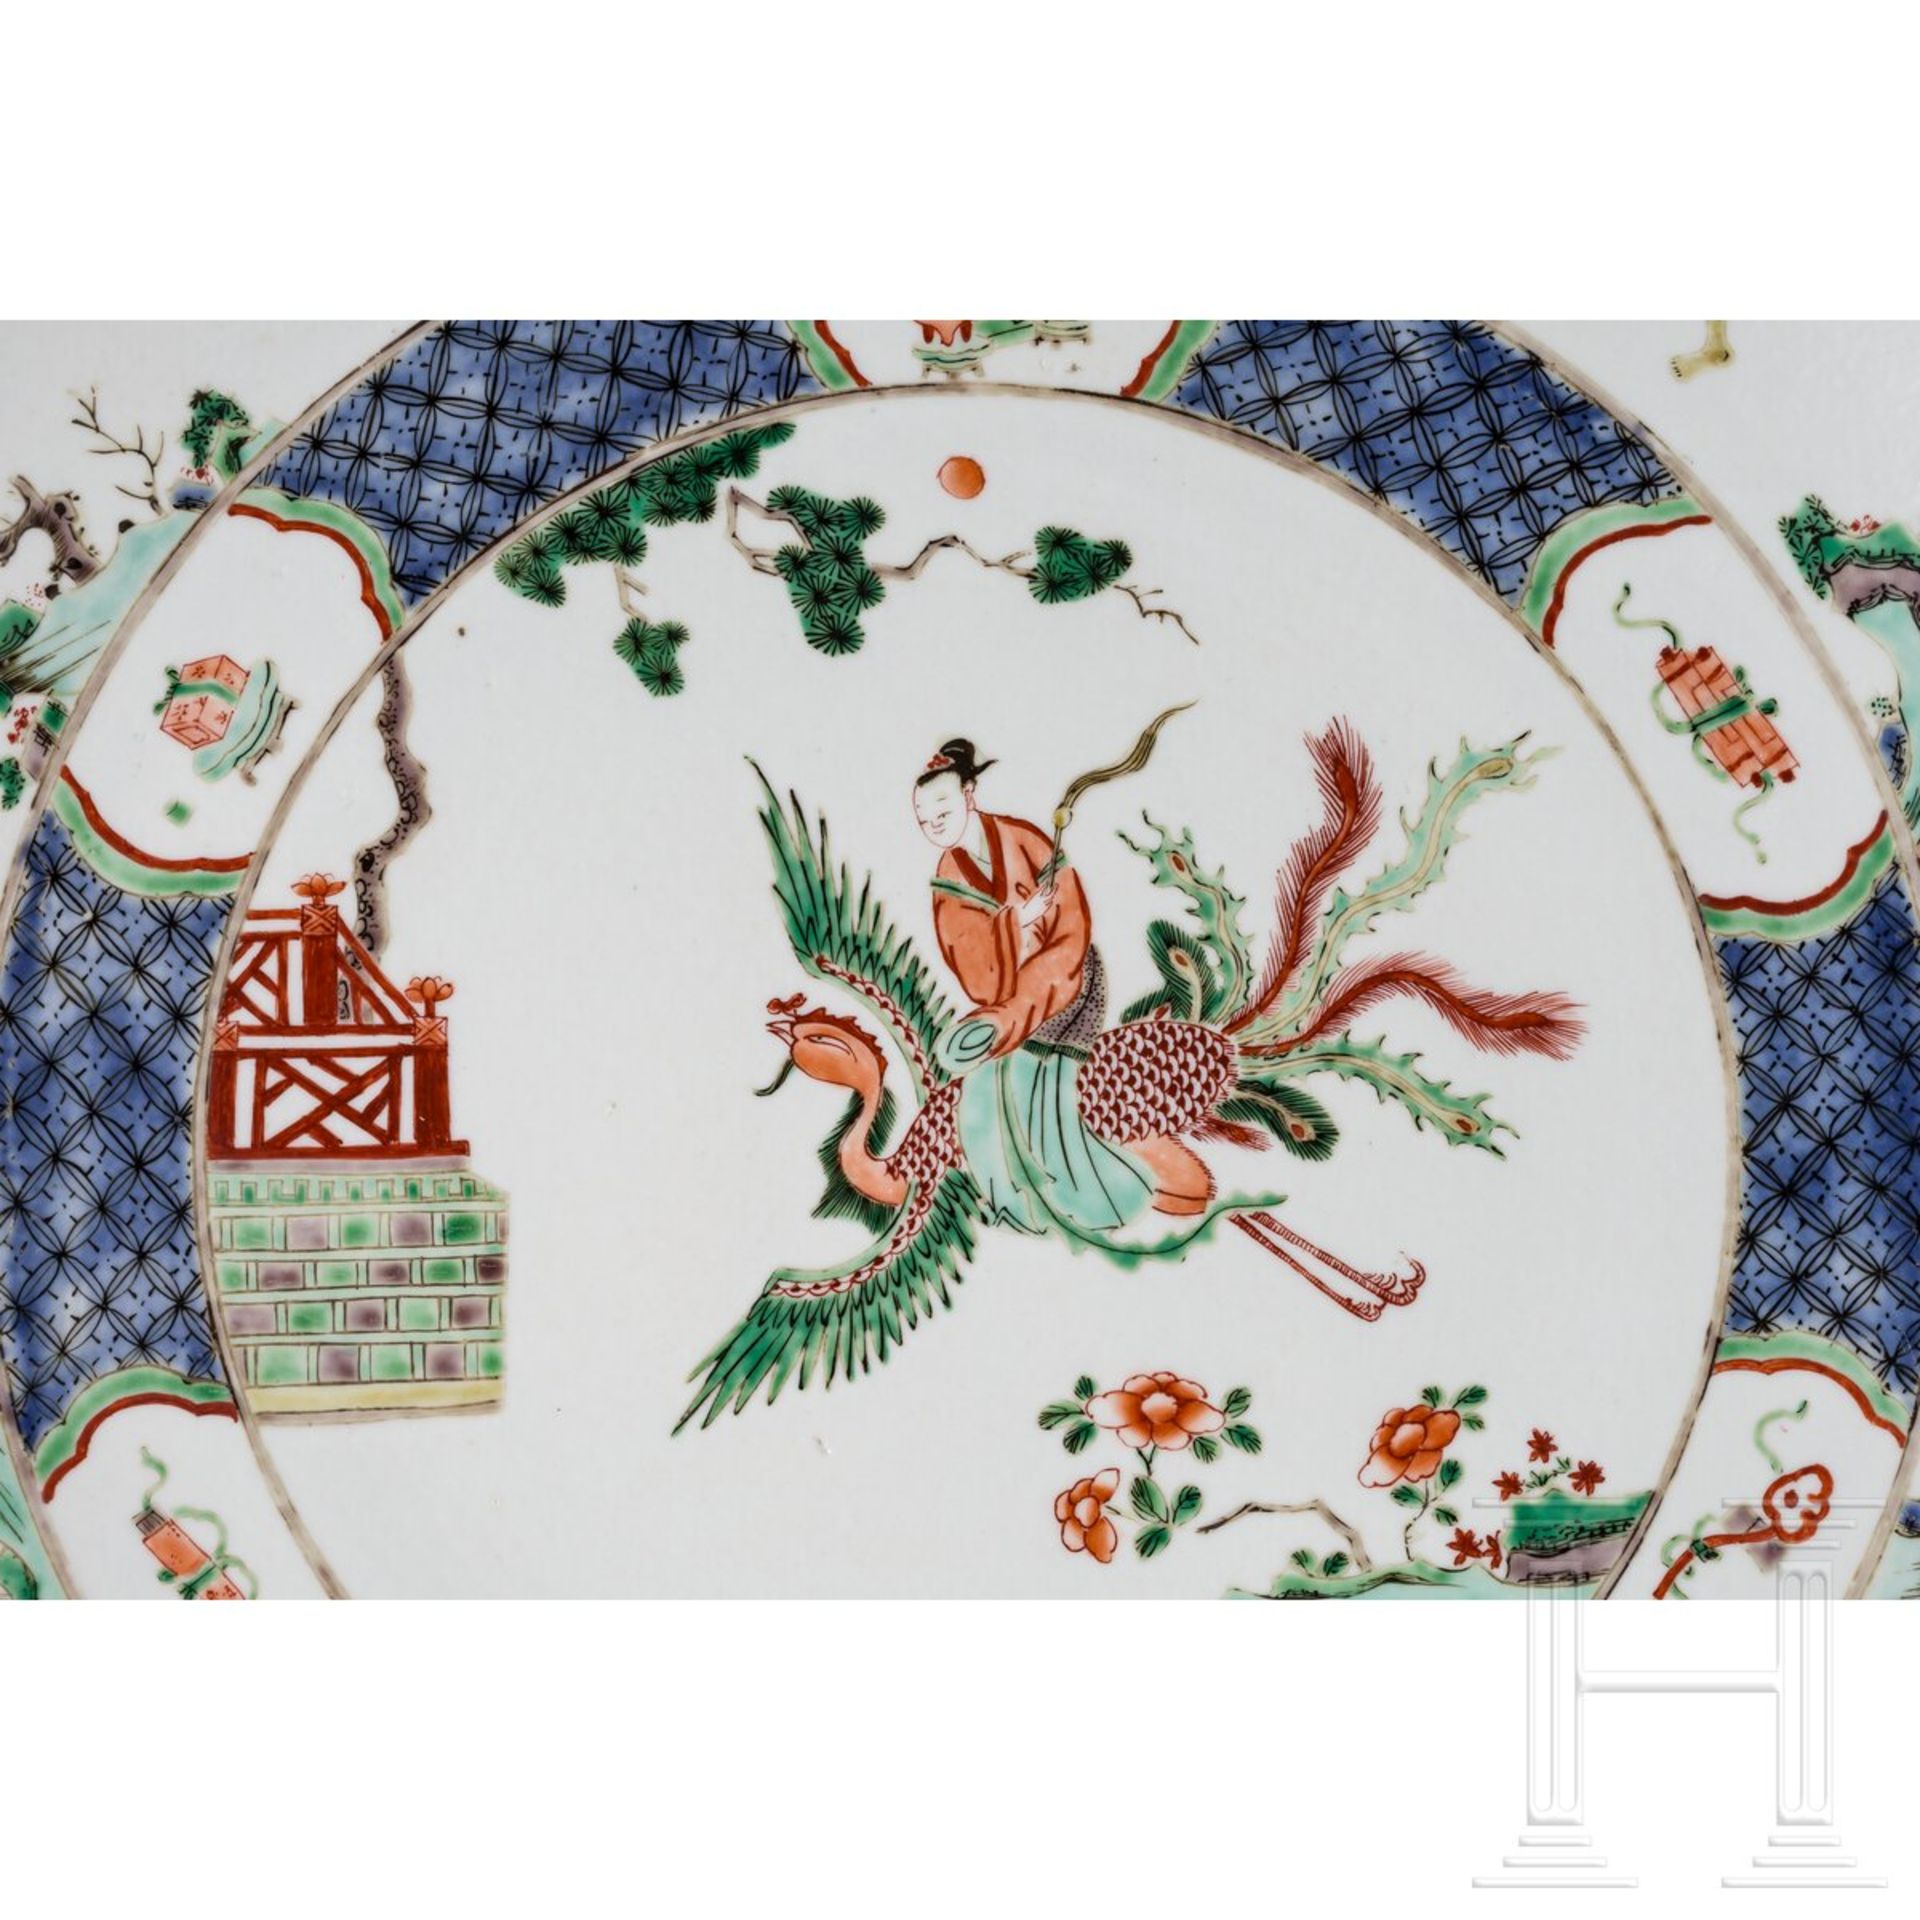 Zwei große Famille-verte-Teller mit figürlichem Dekor, China, wohl Kangxi-Periode (18. Jhdt.) - Image 4 of 40